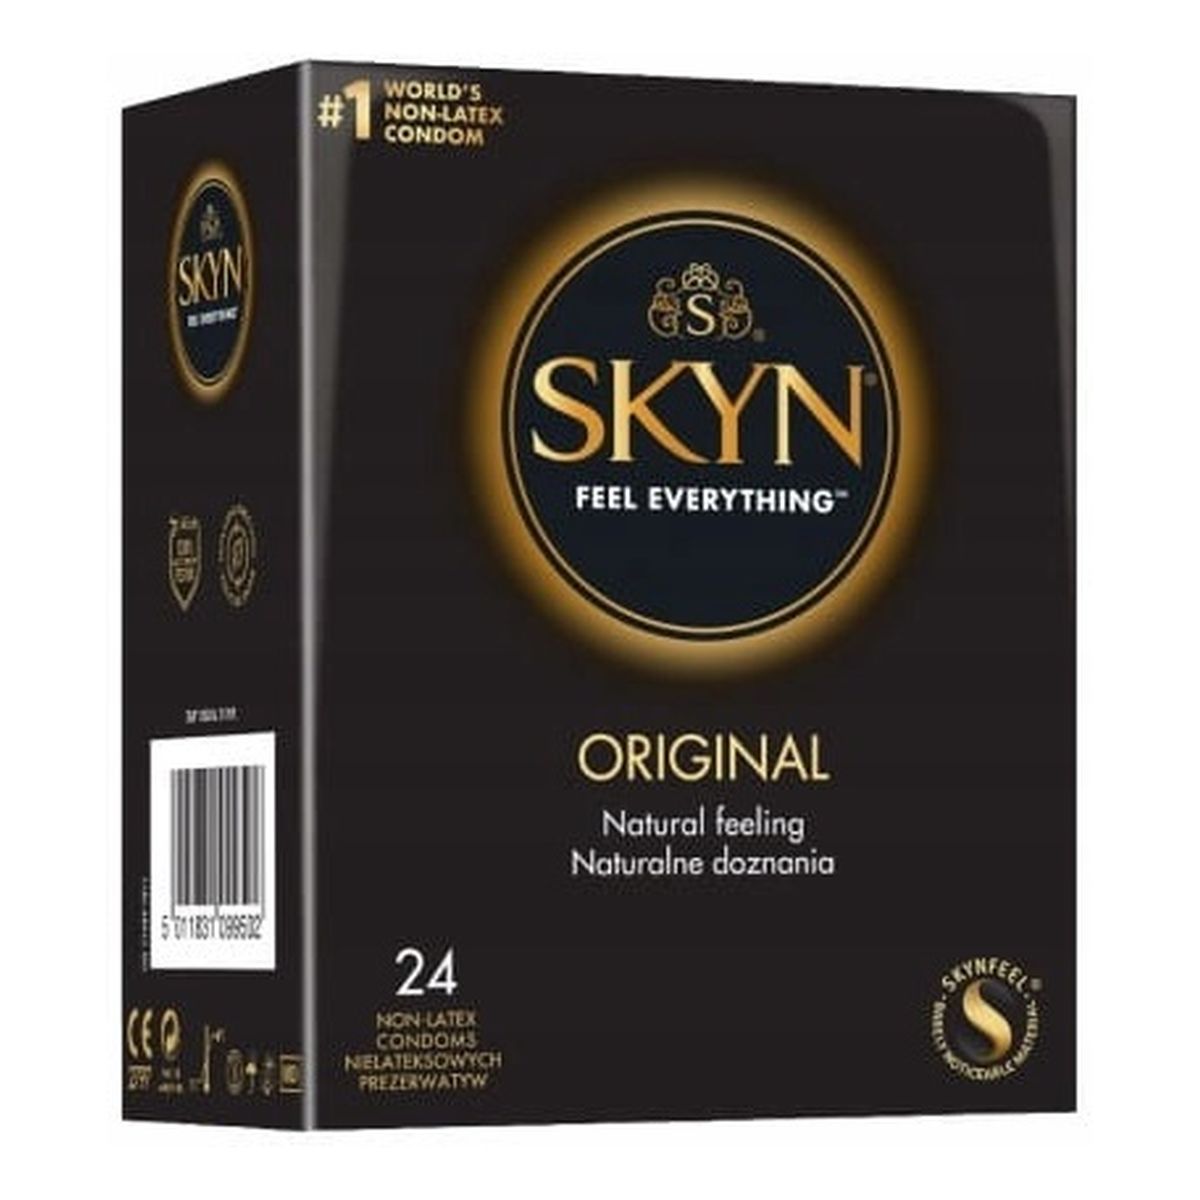 Unimil Skyn original nielateksowe prezerwatywy 24szt.